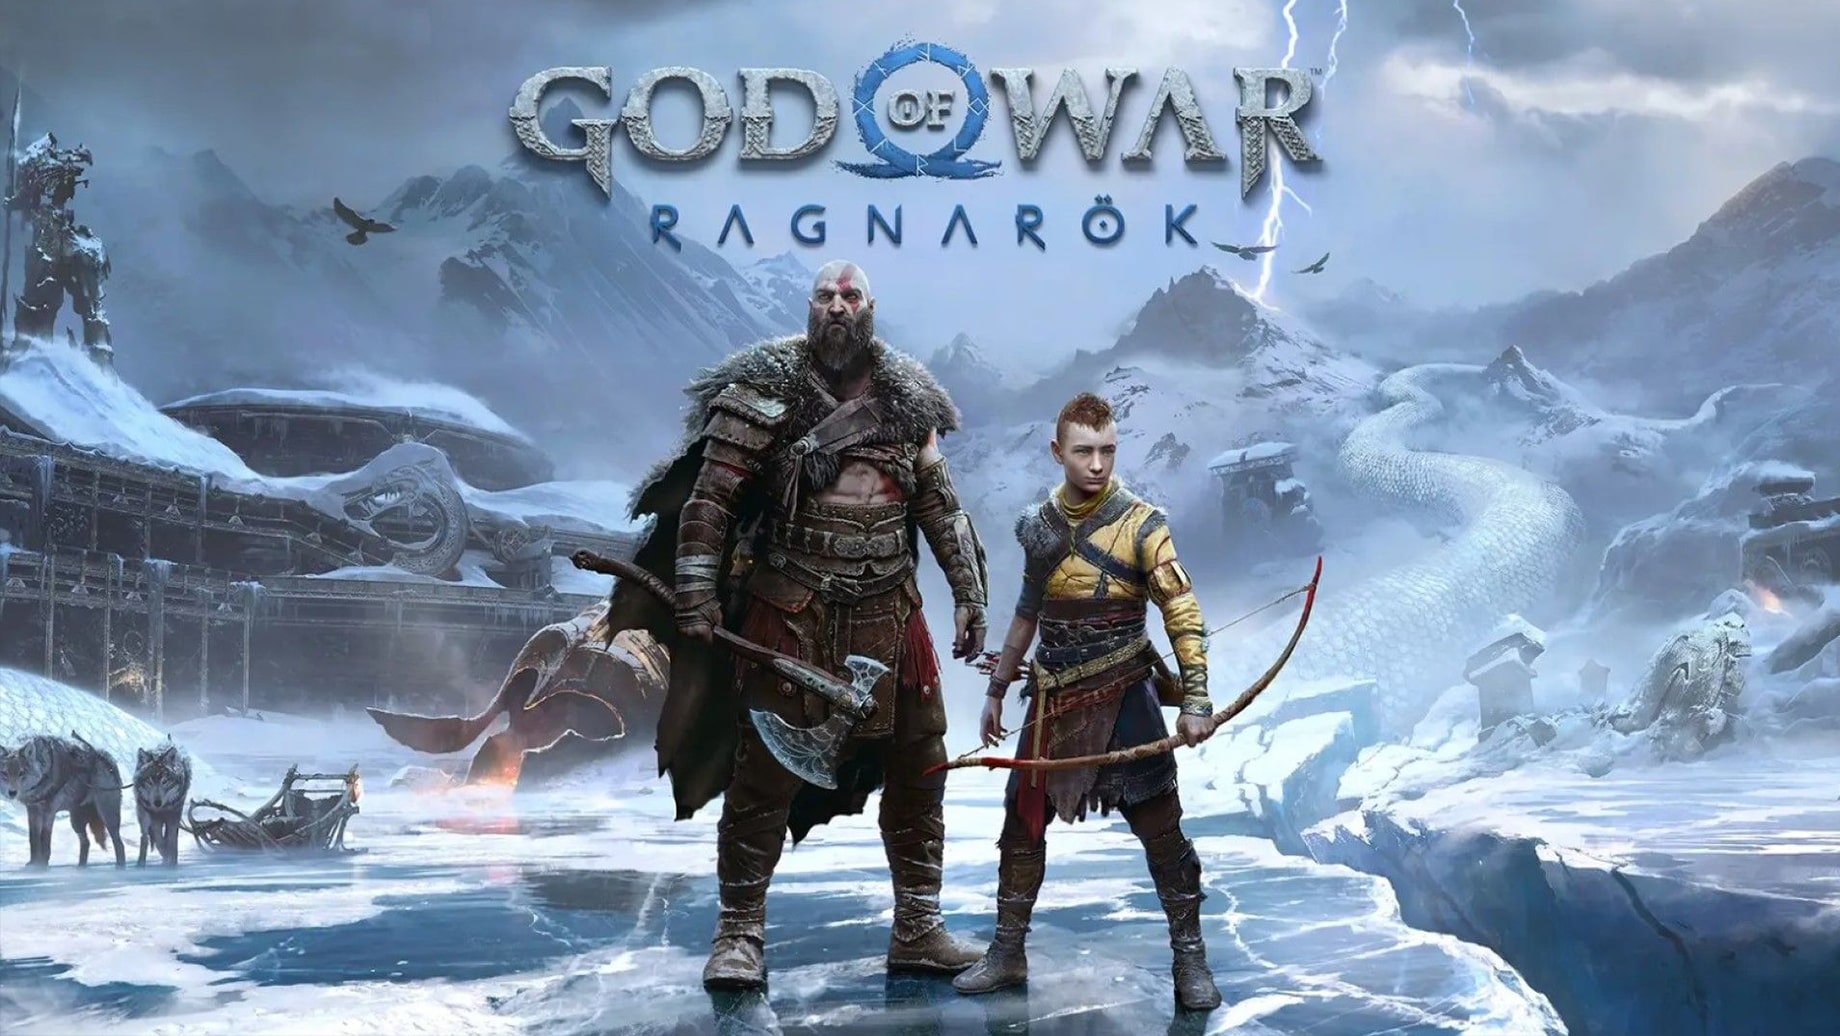 حجم ۱۱۸ گیگابایتی نسخه پلی استیشن 4 بازی God of War Ragnarok